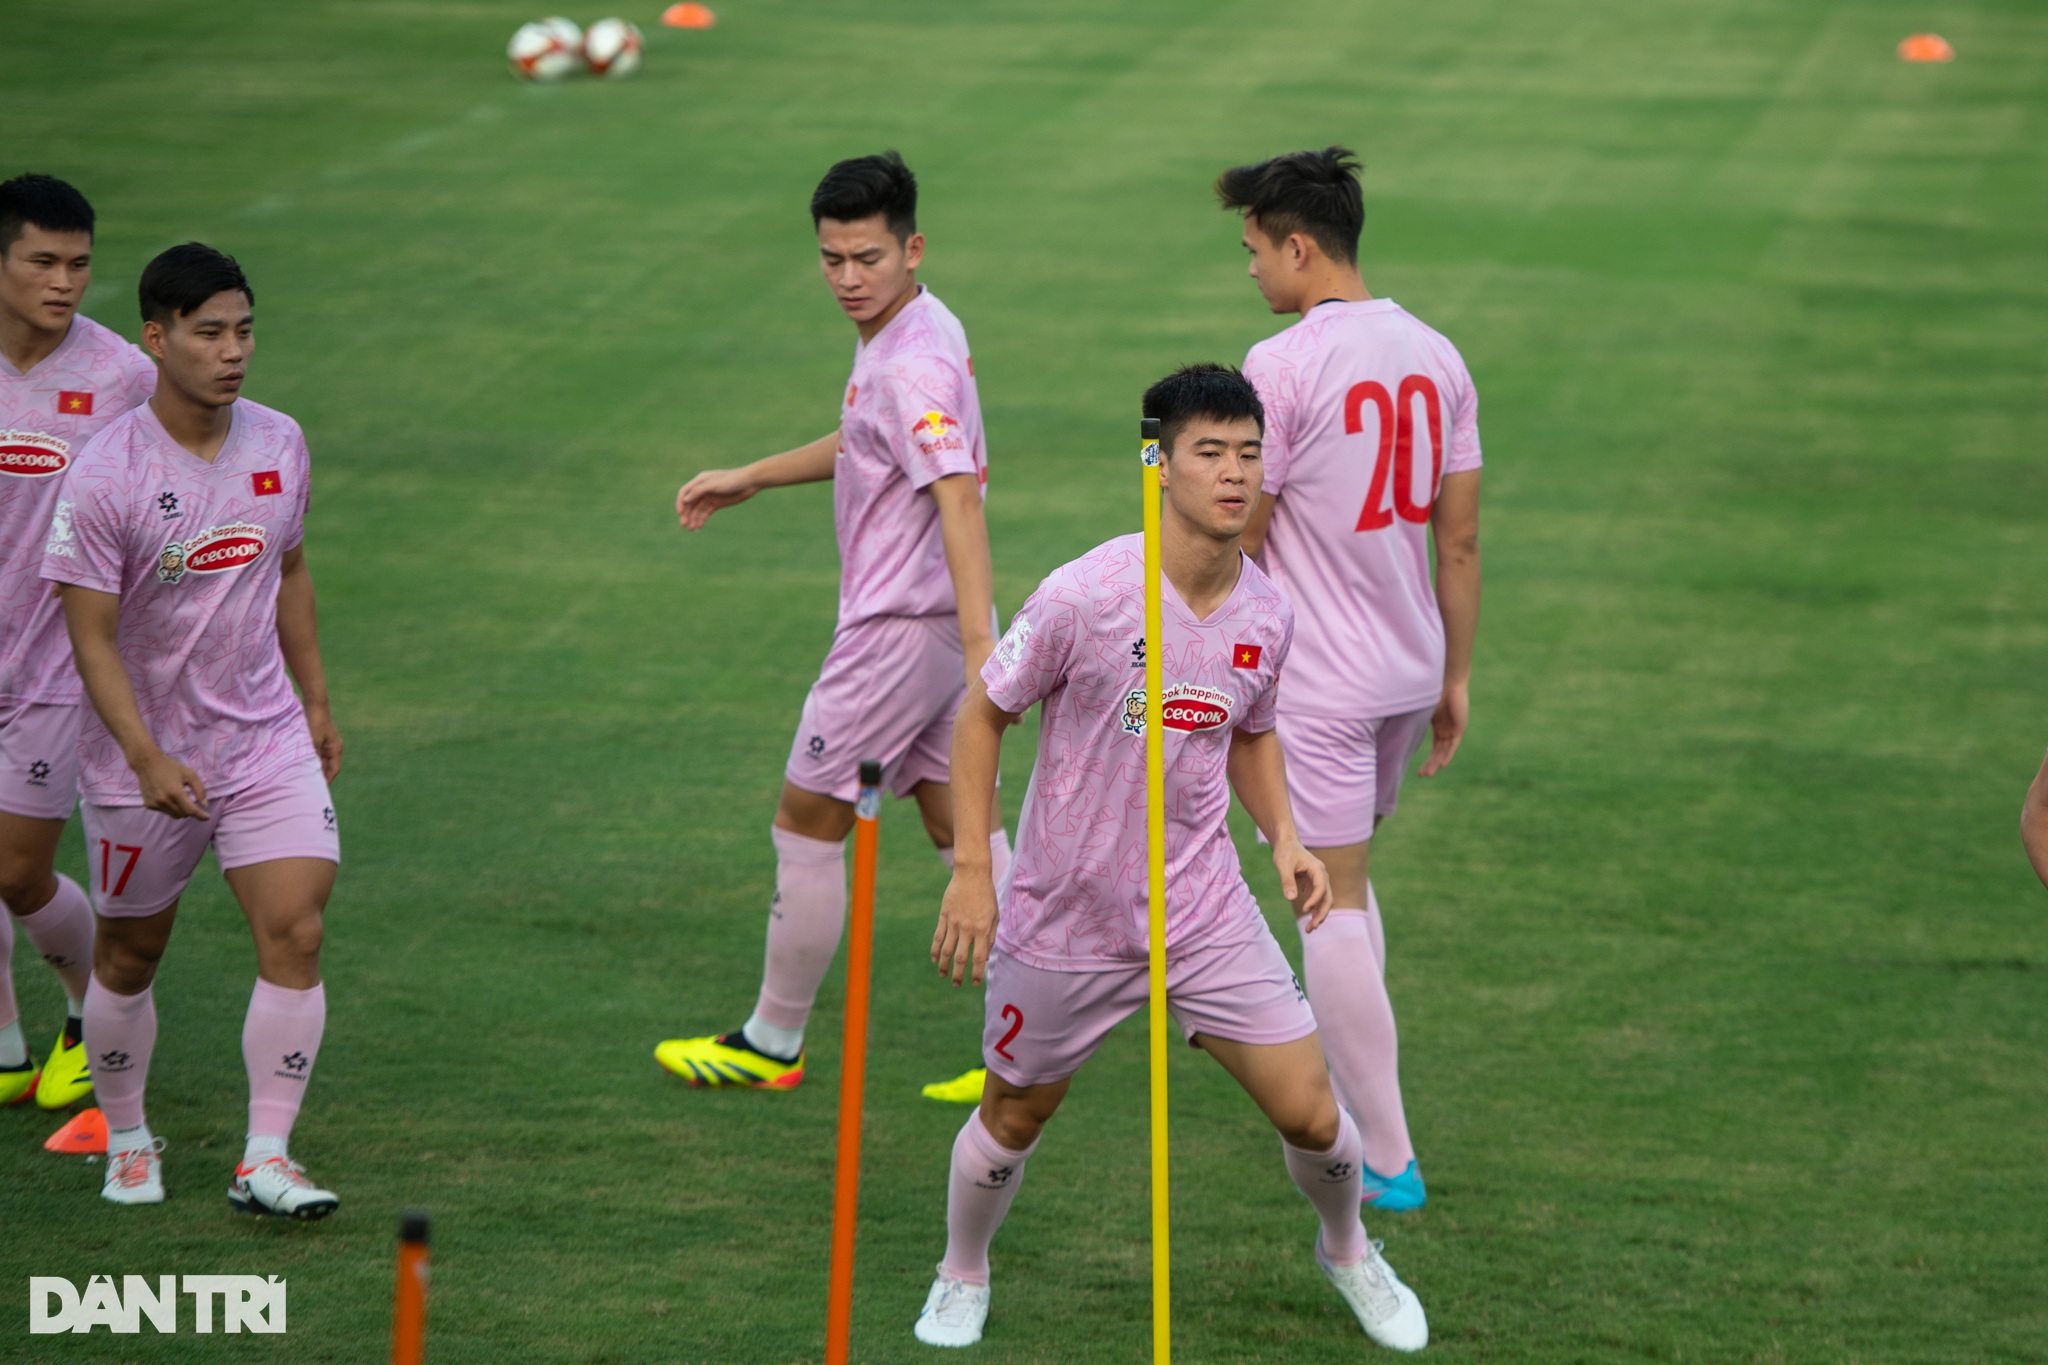 HLV Kim Sang Sik vui vẻ chơi bóng ma cùng tuyển thủ Việt Nam - 4